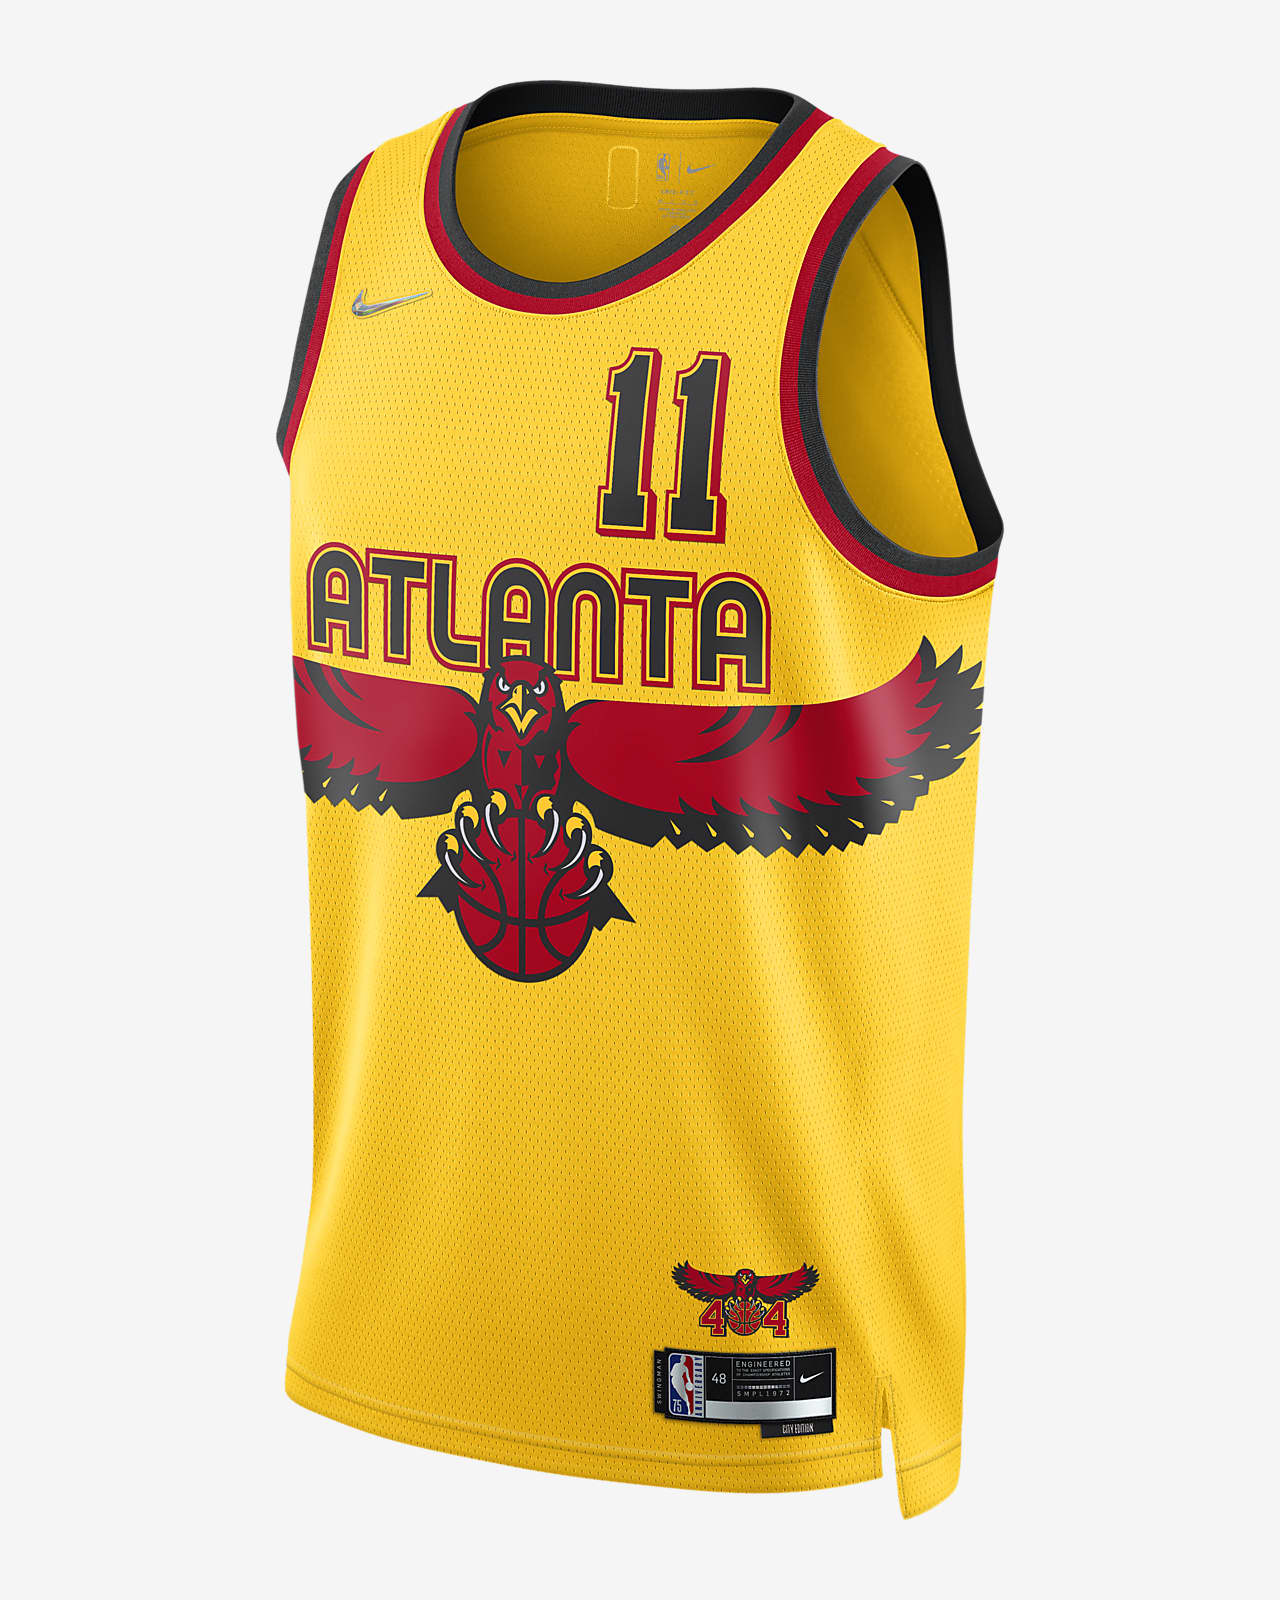 Atlanta Hawks City Edition Nike Dri-FIT NBA Swingman Jersey